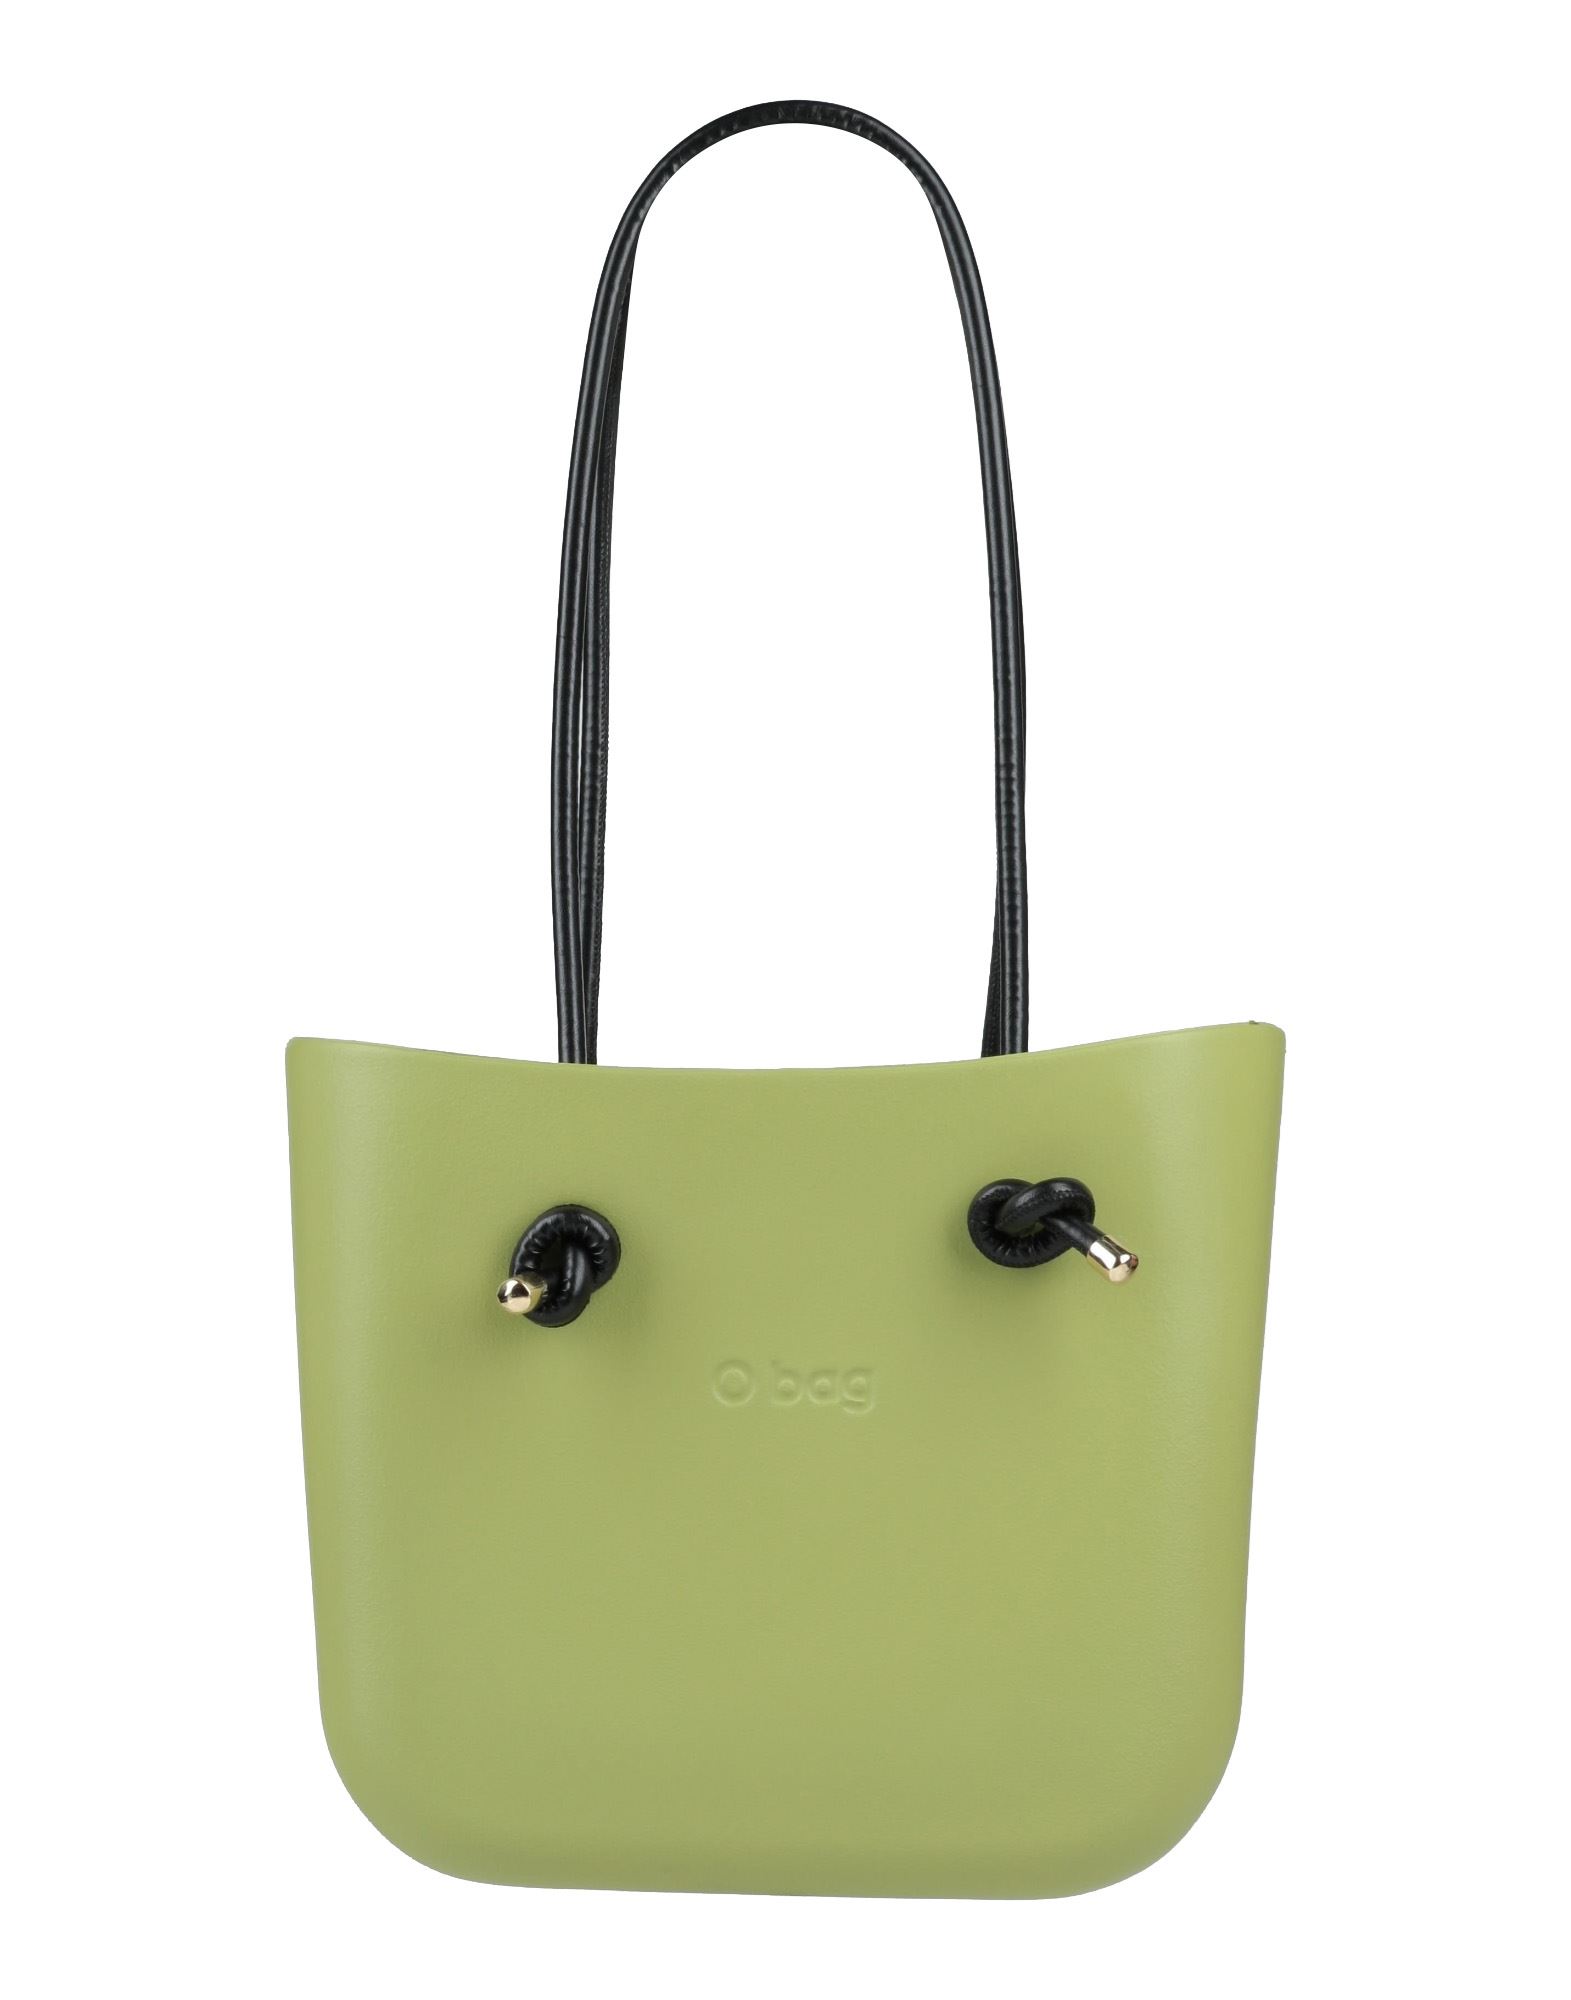 O Bag Handbags In Acid Green